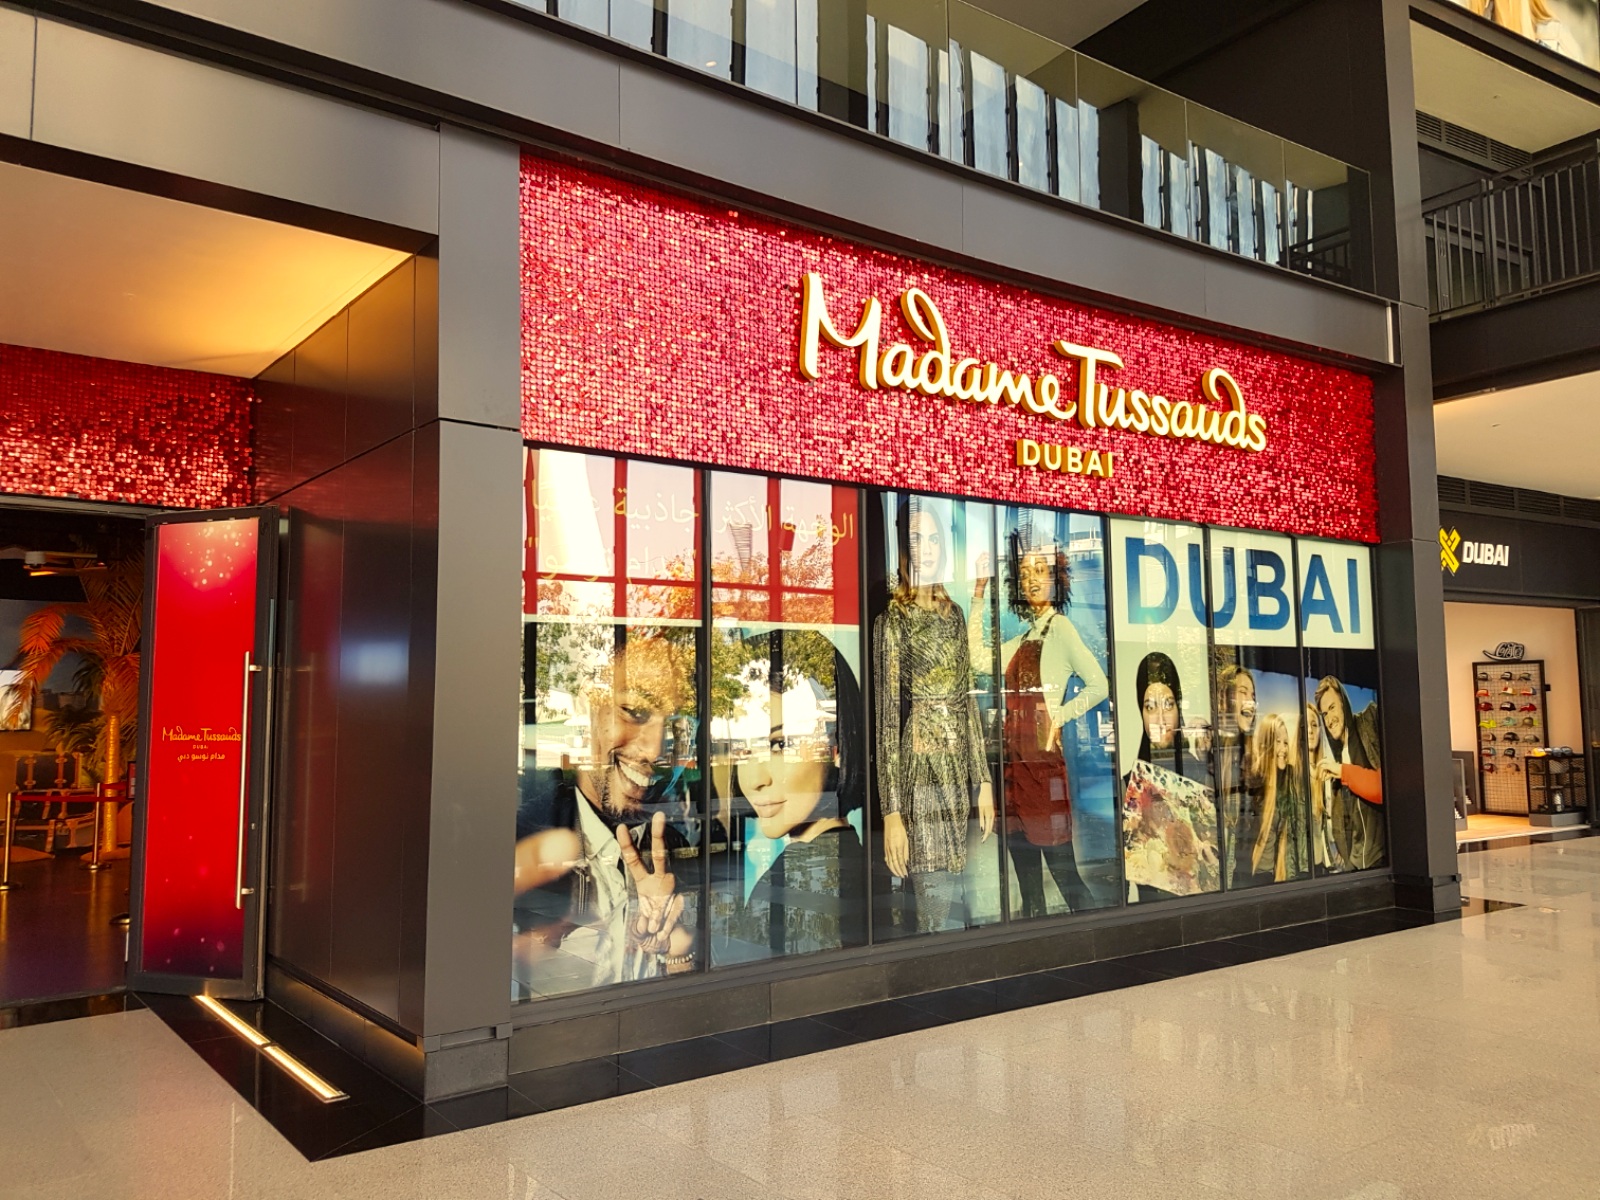 Madame Tussauds Dubai - Wax museum